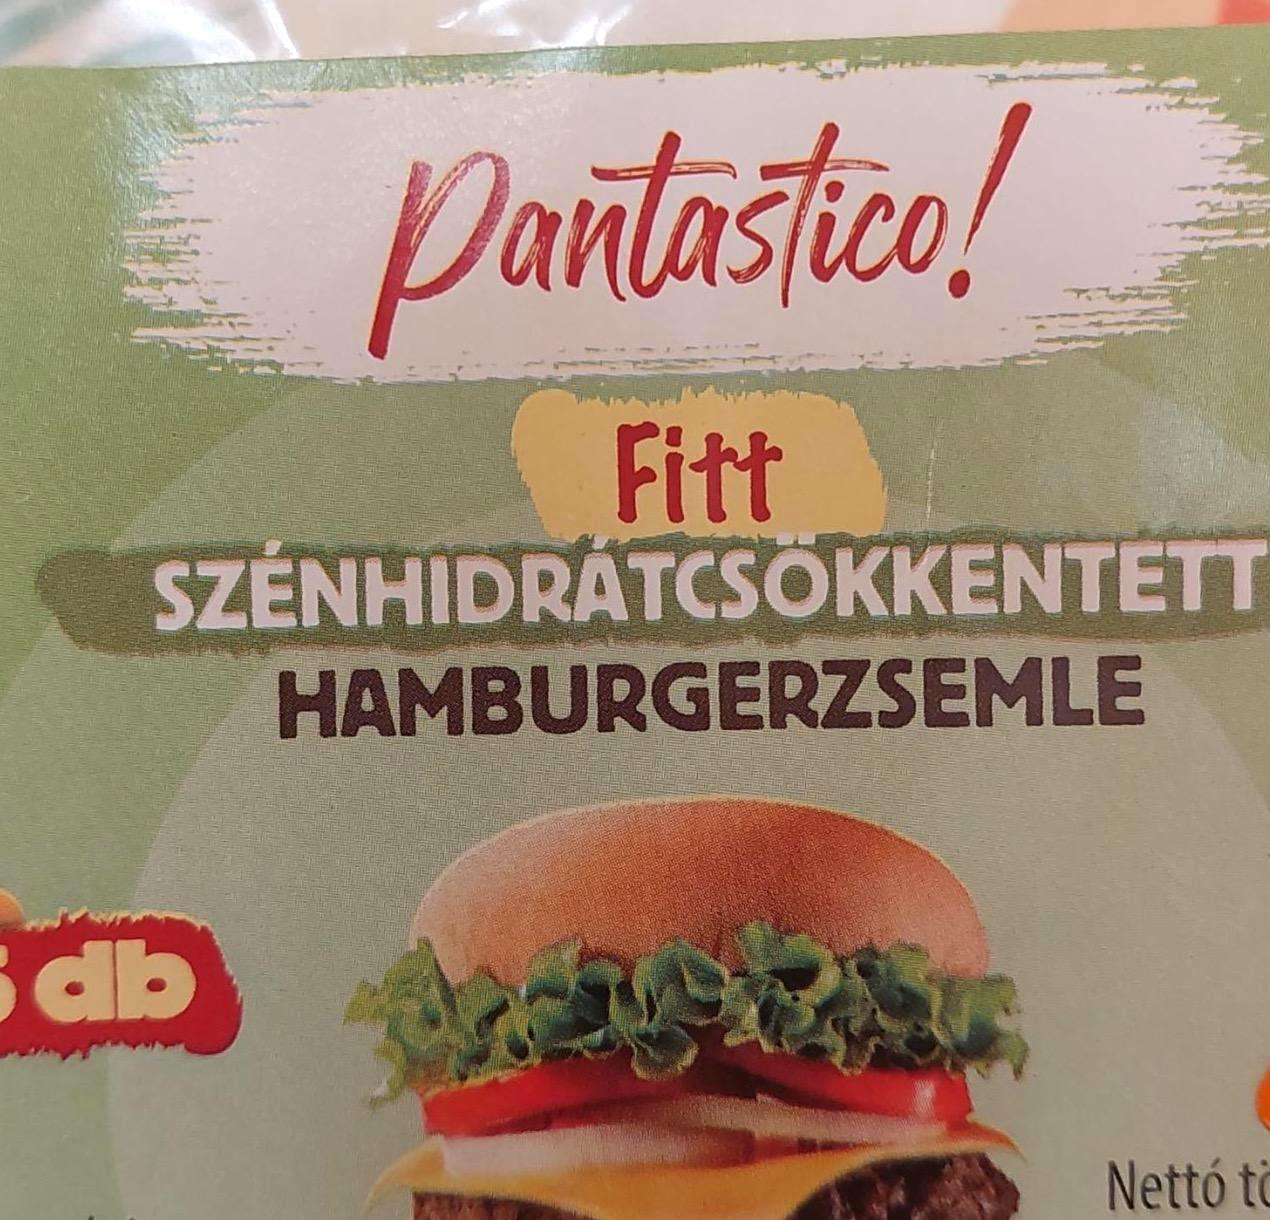 Képek - Fitt szénhidrátcsökkentett hamburgerzsemle Pantastico!